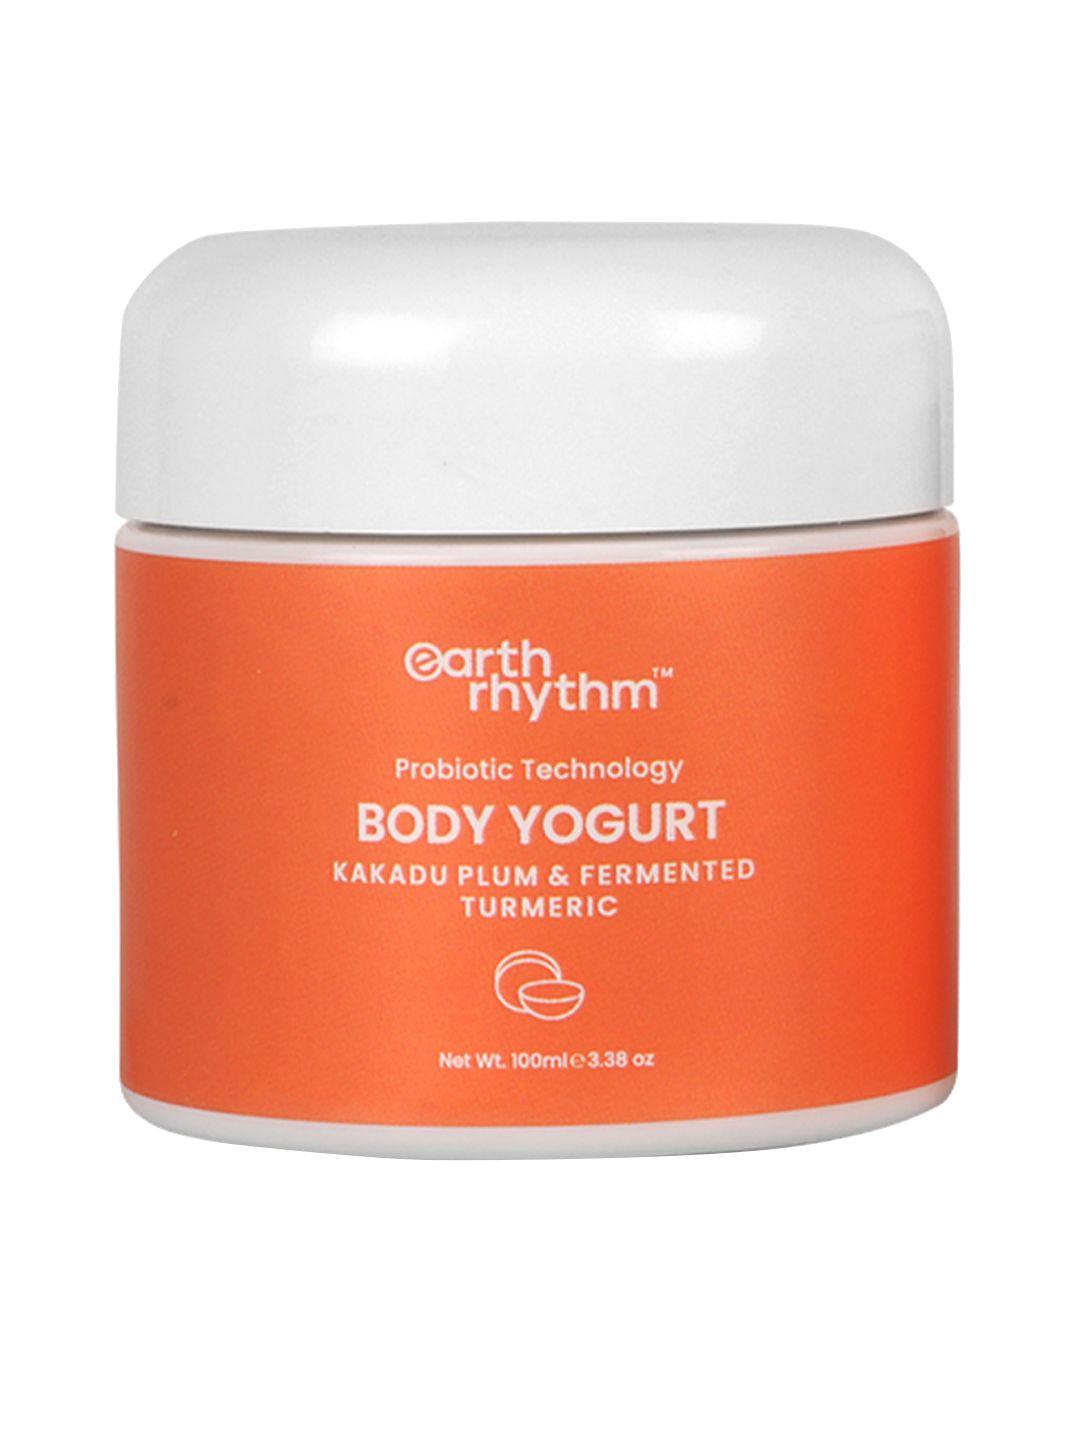 earth rhythm kakadu plum & fermented turmeric probiotic technology body yogurt - 100 ml